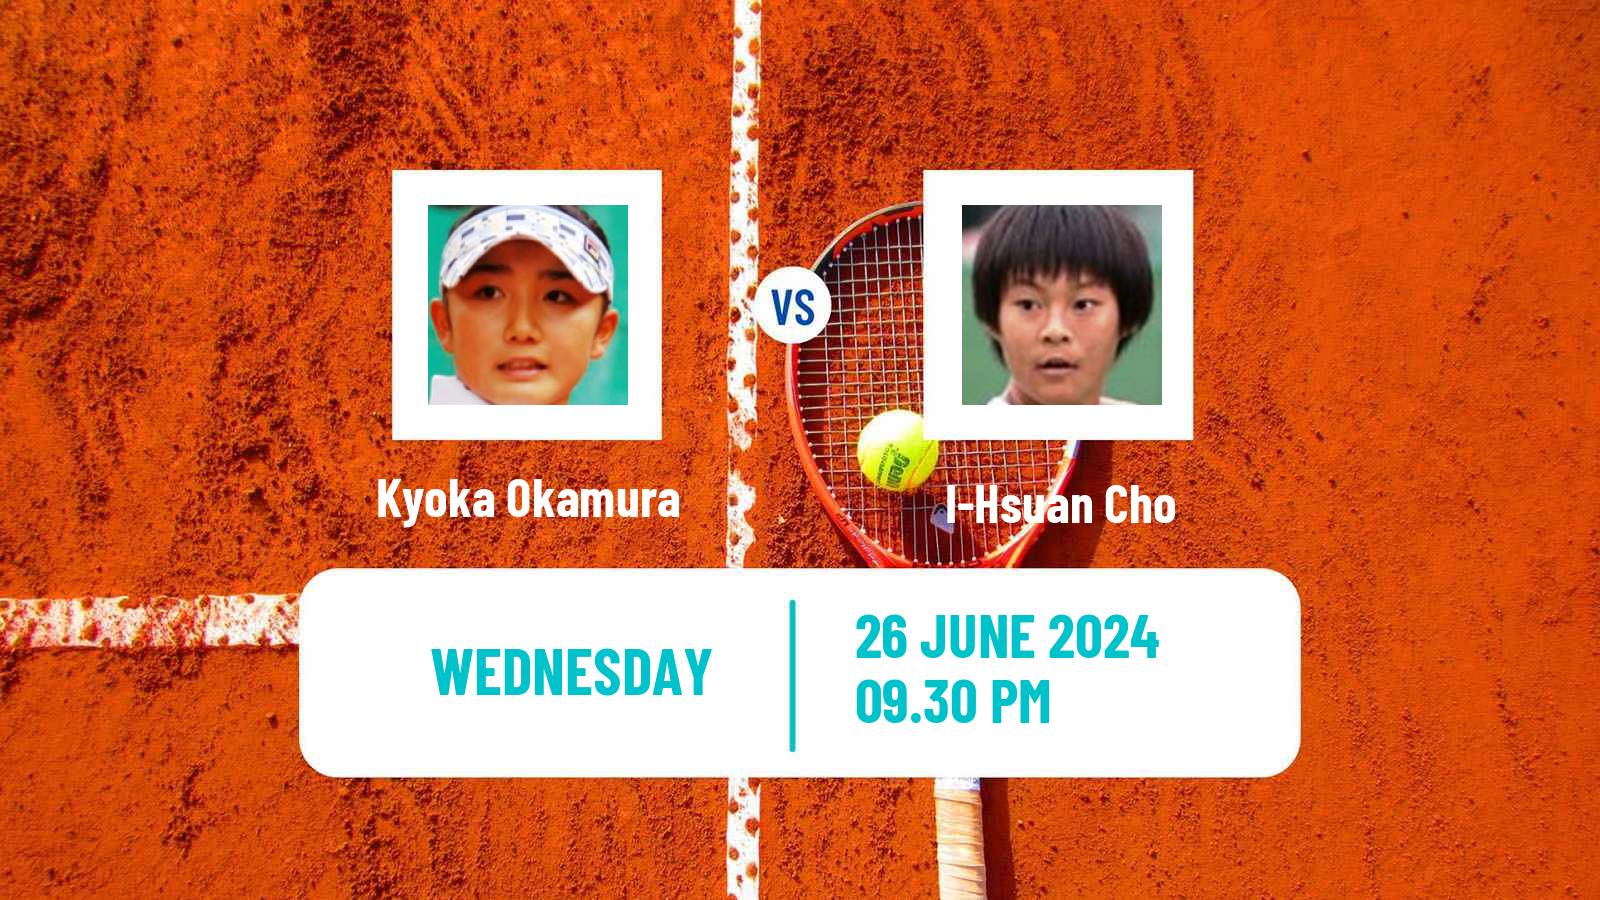 Tennis ITF W35 Taipei 2 Women Kyoka Okamura - I-Hsuan Cho